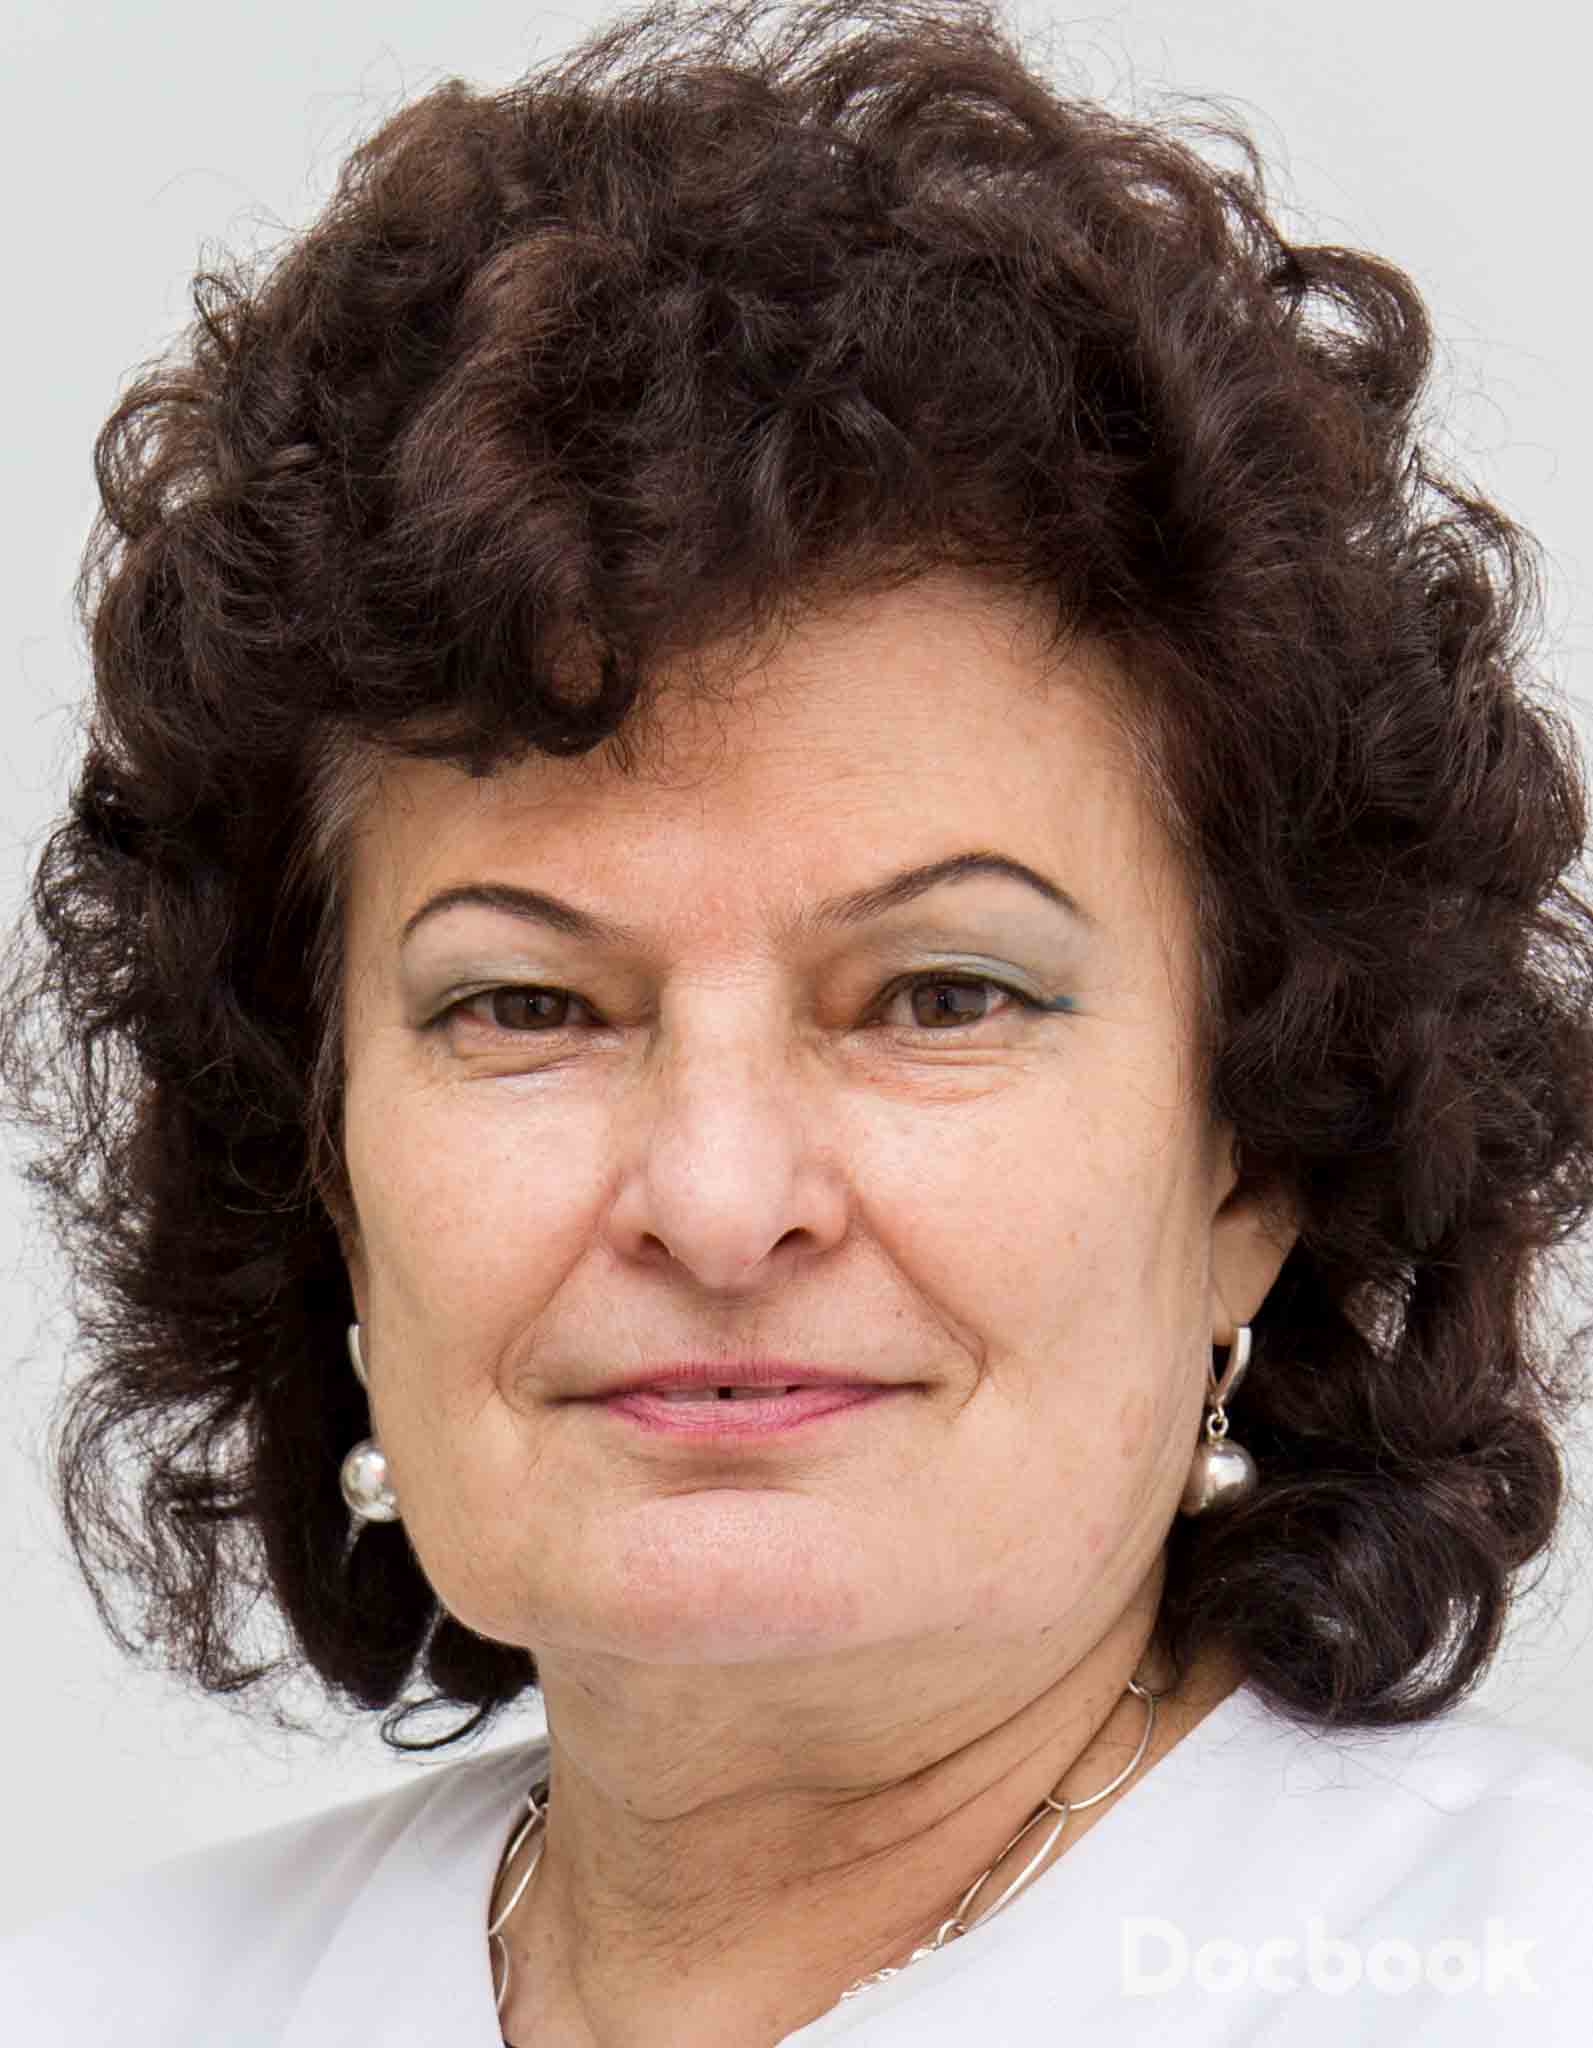 Dr. Prof. Ana Campeanu